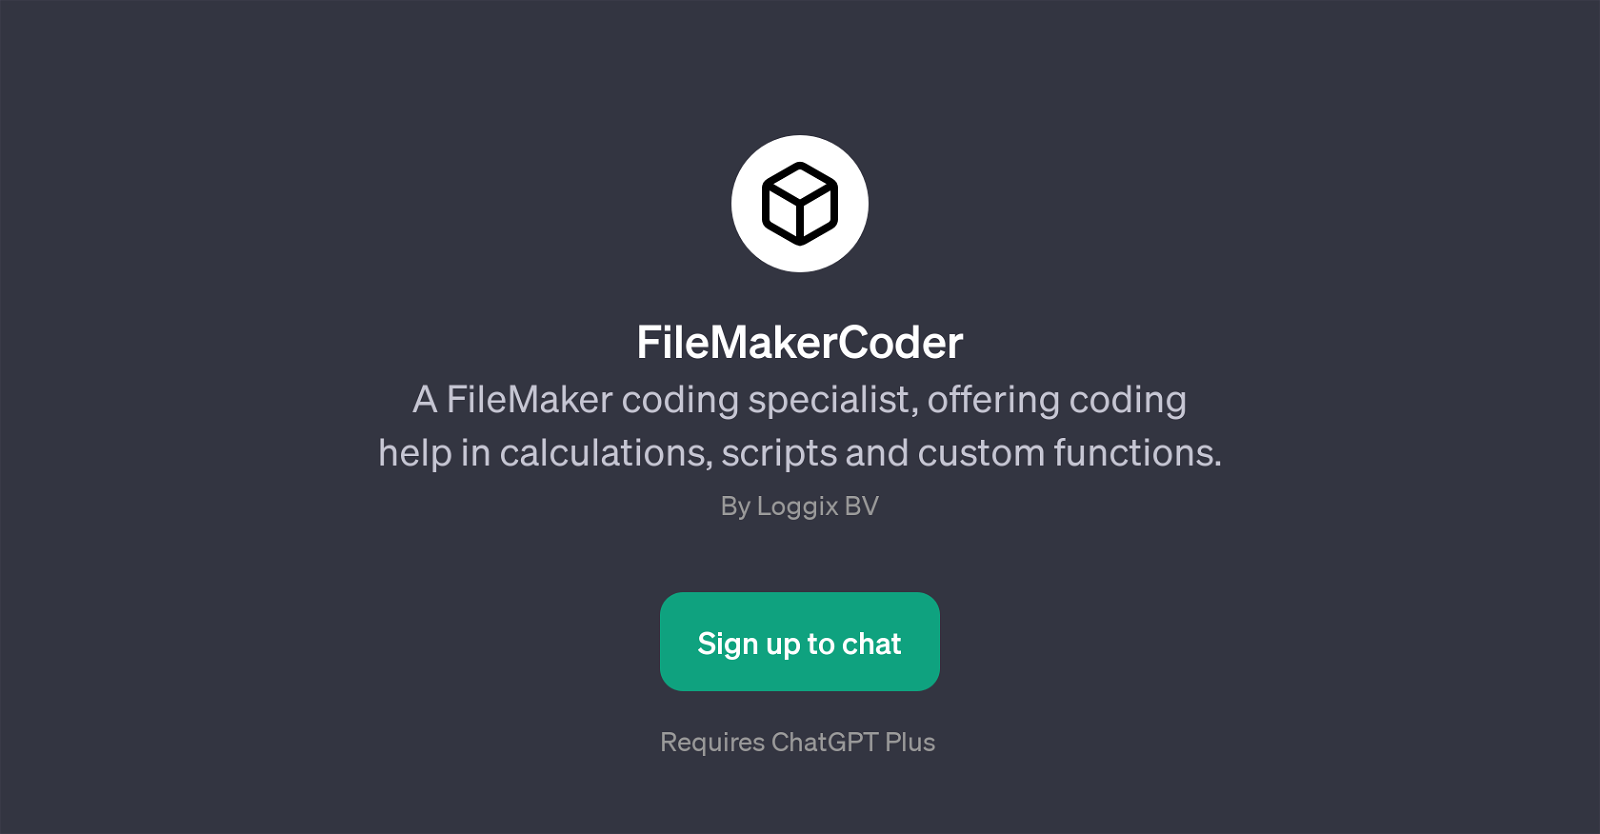 FileMakerCoder website